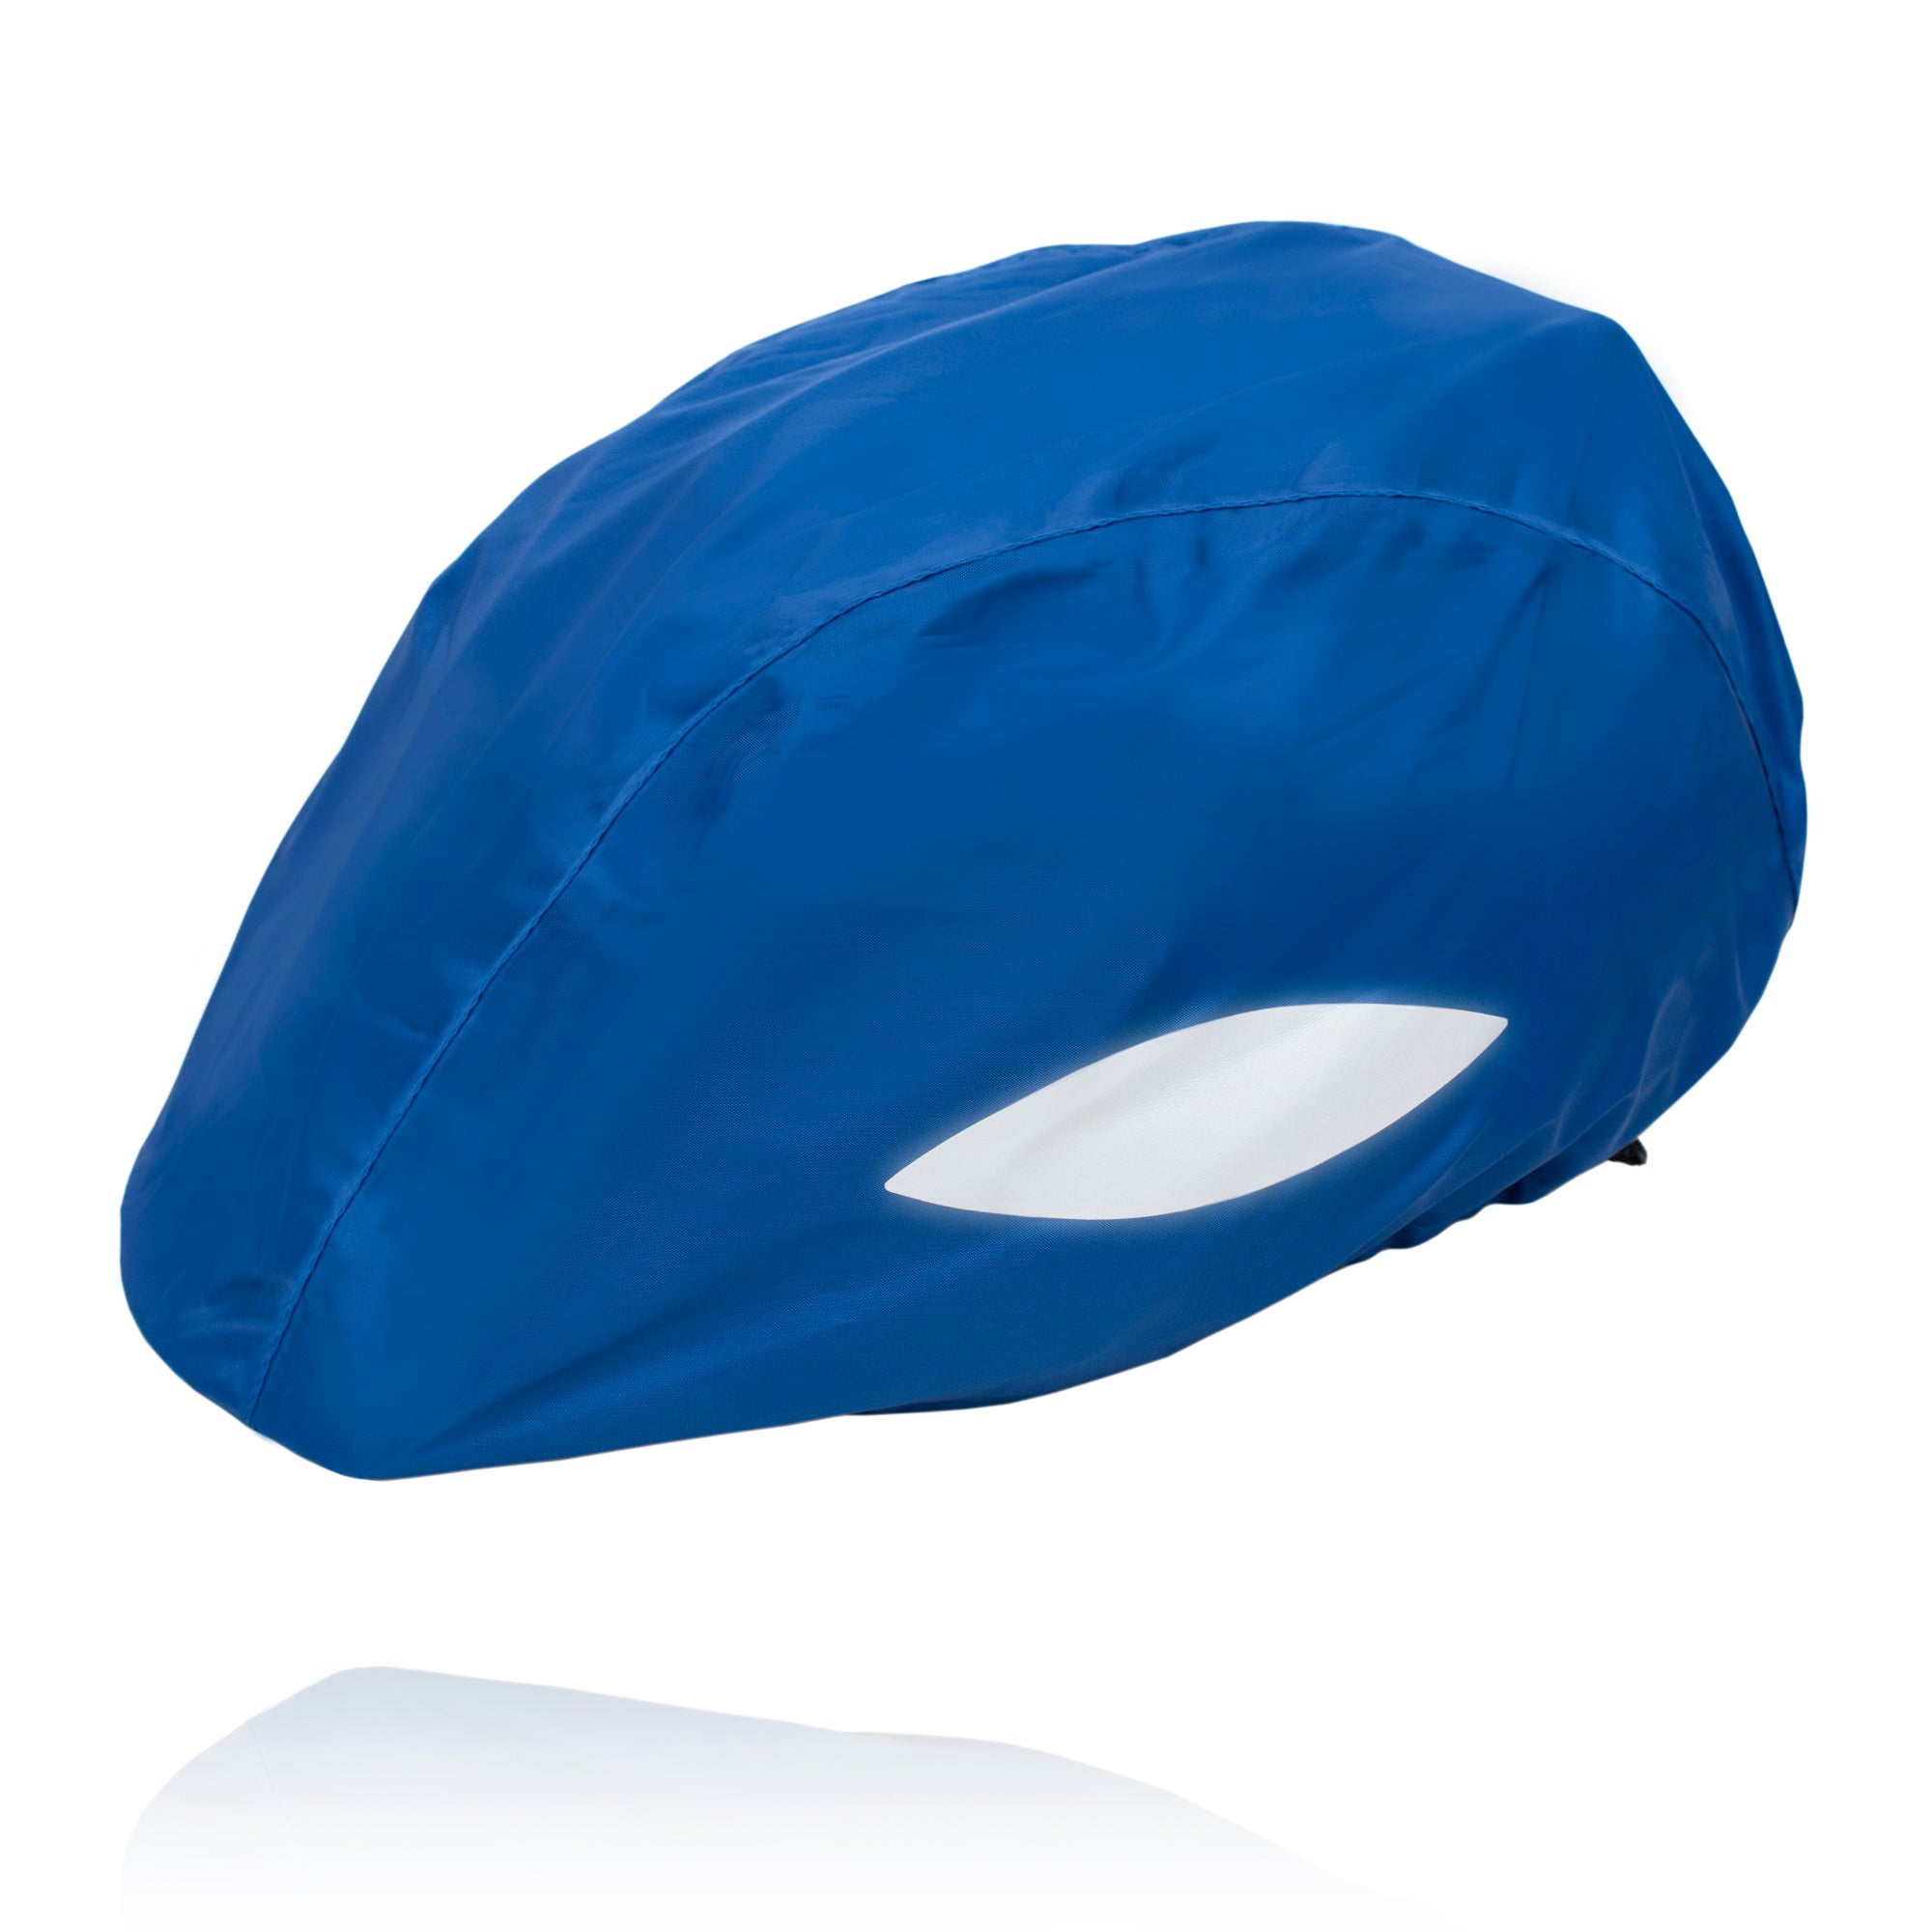 Helmüberzug blau mit Reflektoren